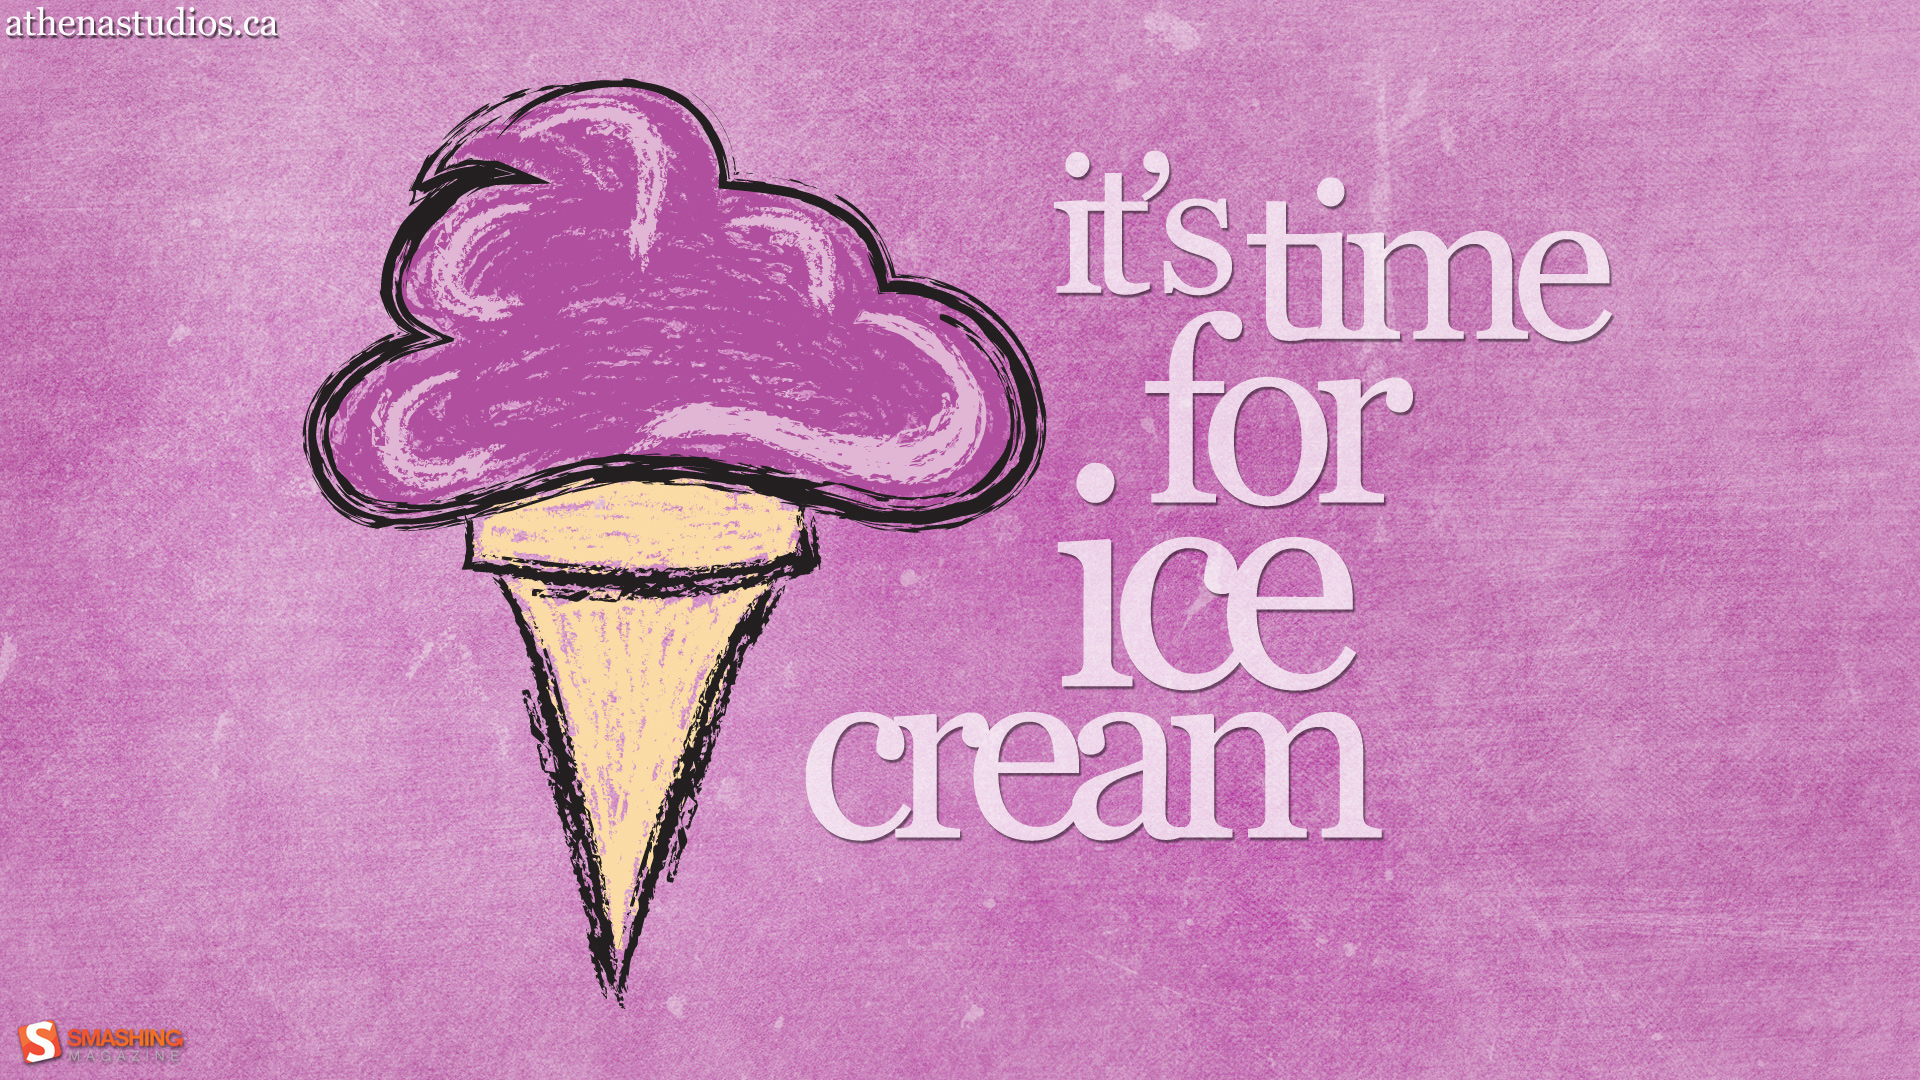 Free Ice Cream Cone Wallpaper For Desktop - HD Wallpaper 